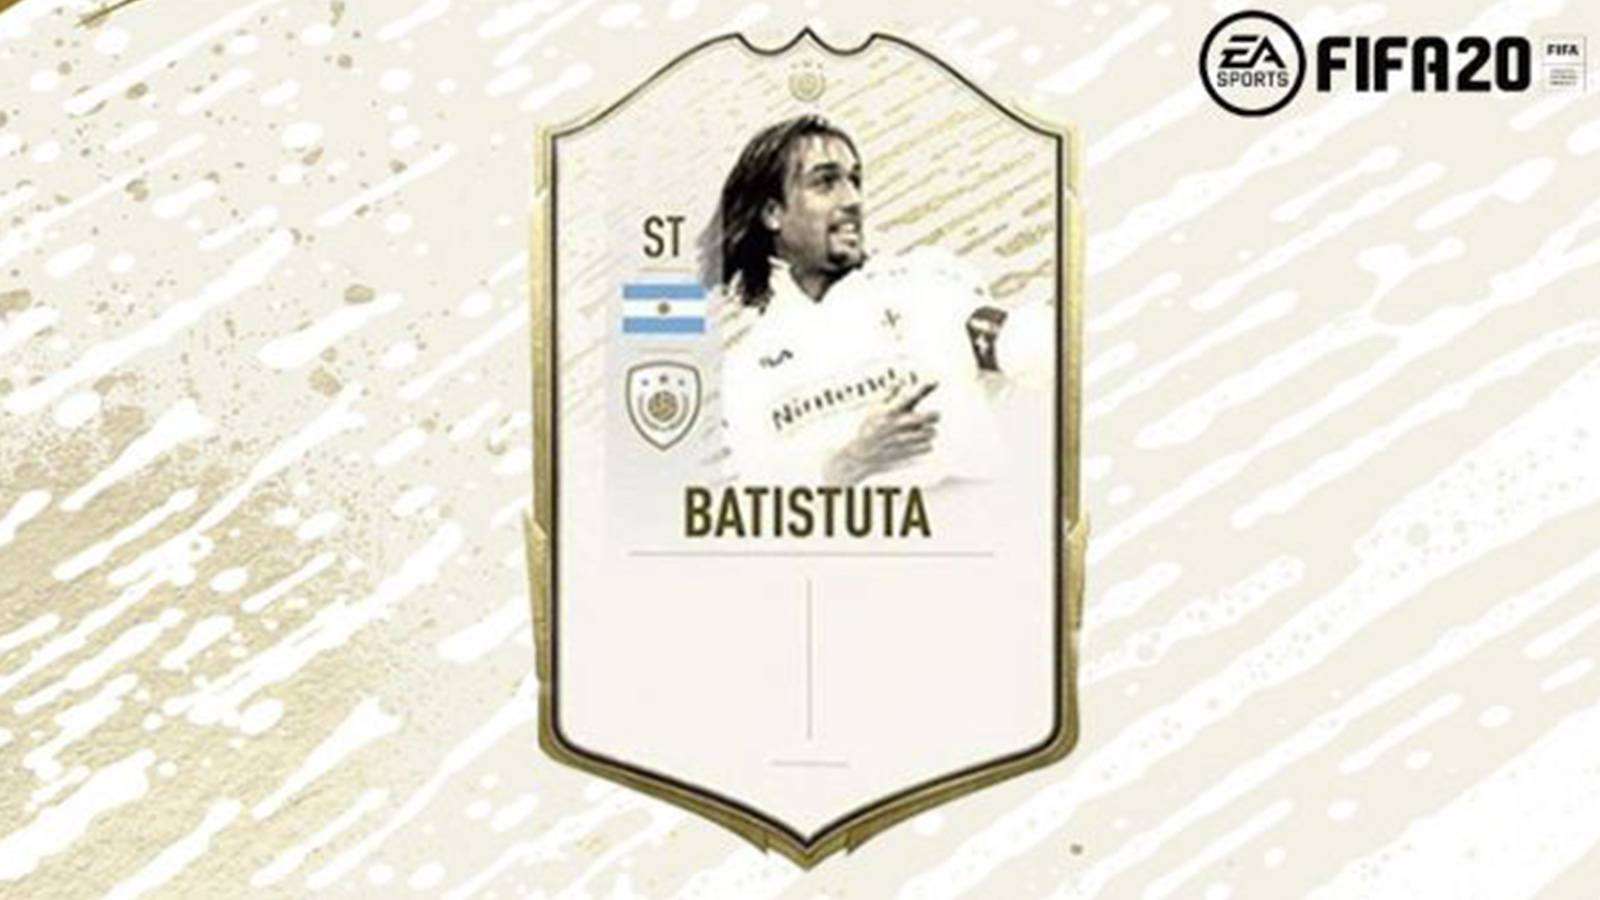 Carte Icônes de Gabriel Batistuta sur FIFA 20.